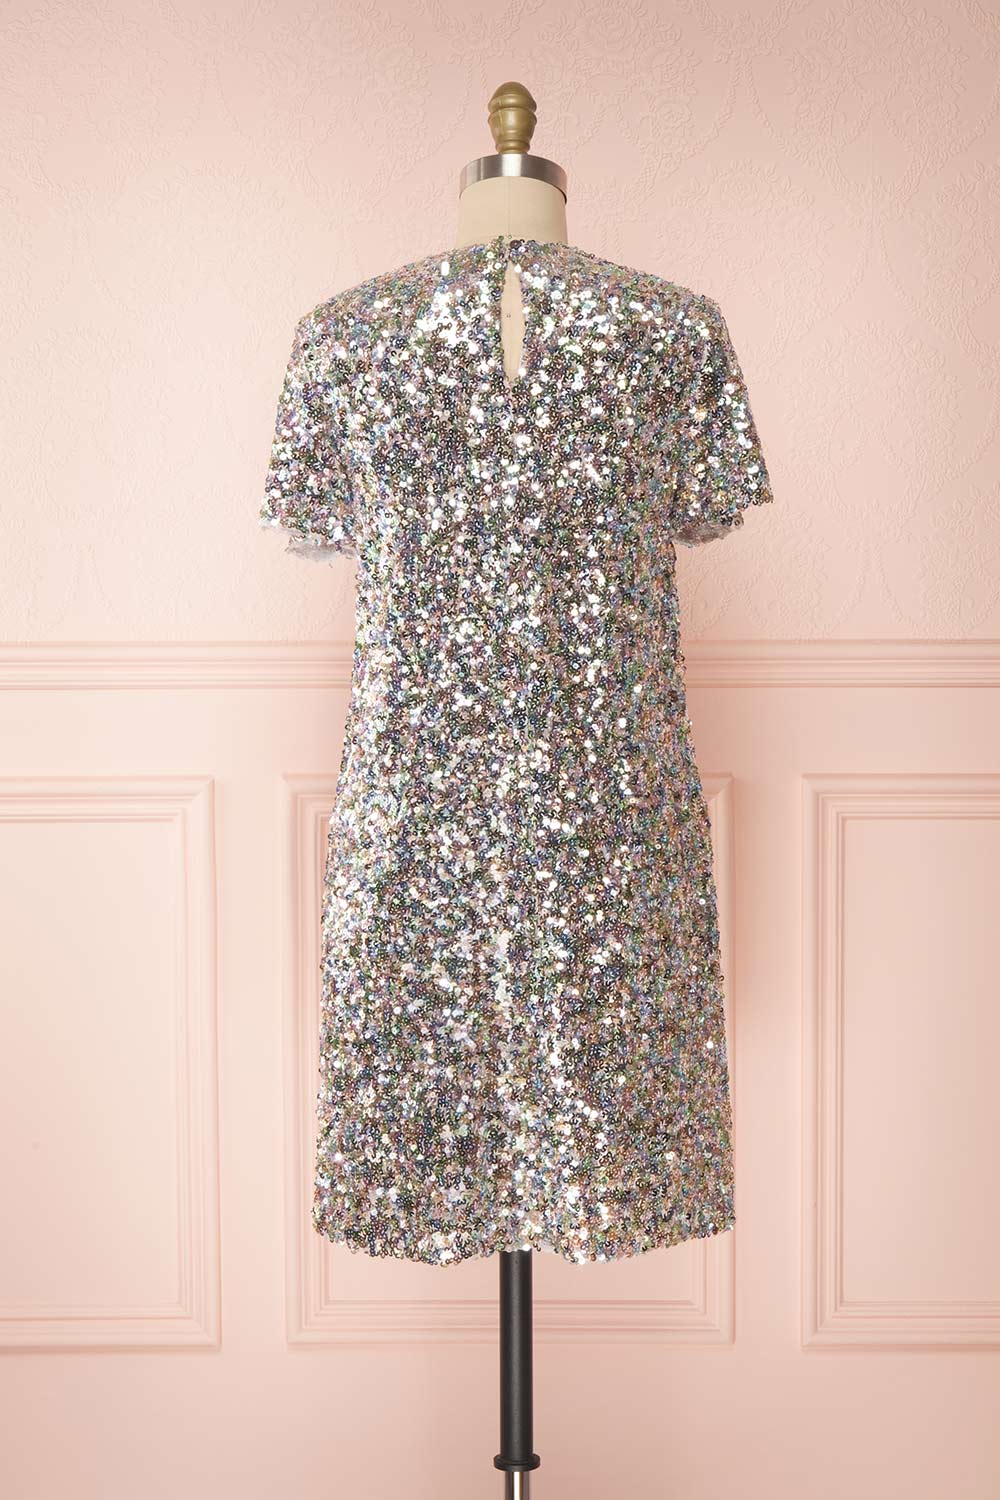 Solange Multicolour Short Sequin Dress | Boutique 1861 back view 